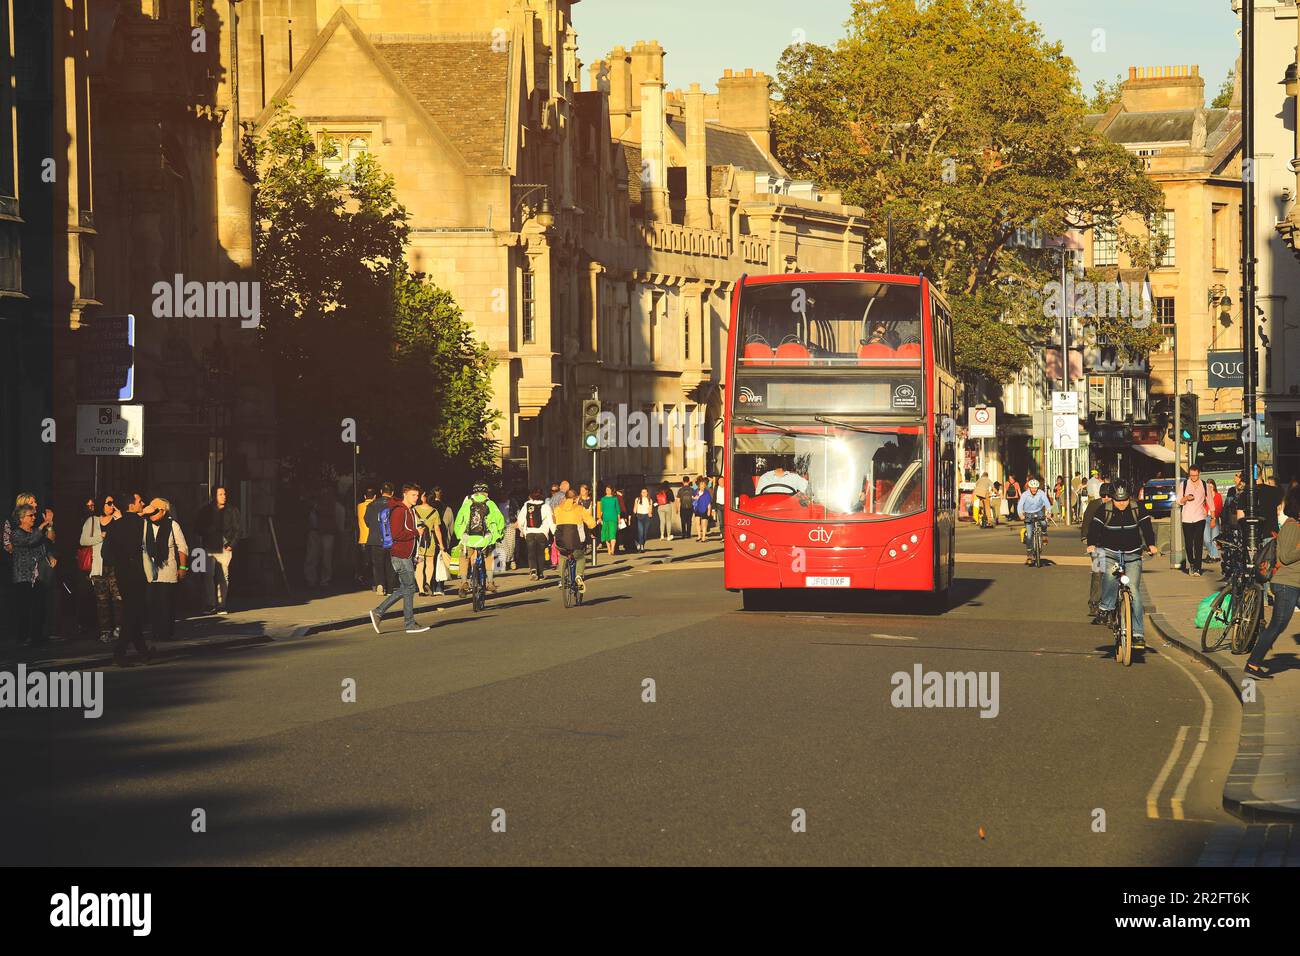 Oxford, Royaume-Uni - 20 septembre , 2019 : vue de la scène de rue avec bus rouge à impériale sur la rue d'Oxford, Royaume-Uni. Banque D'Images